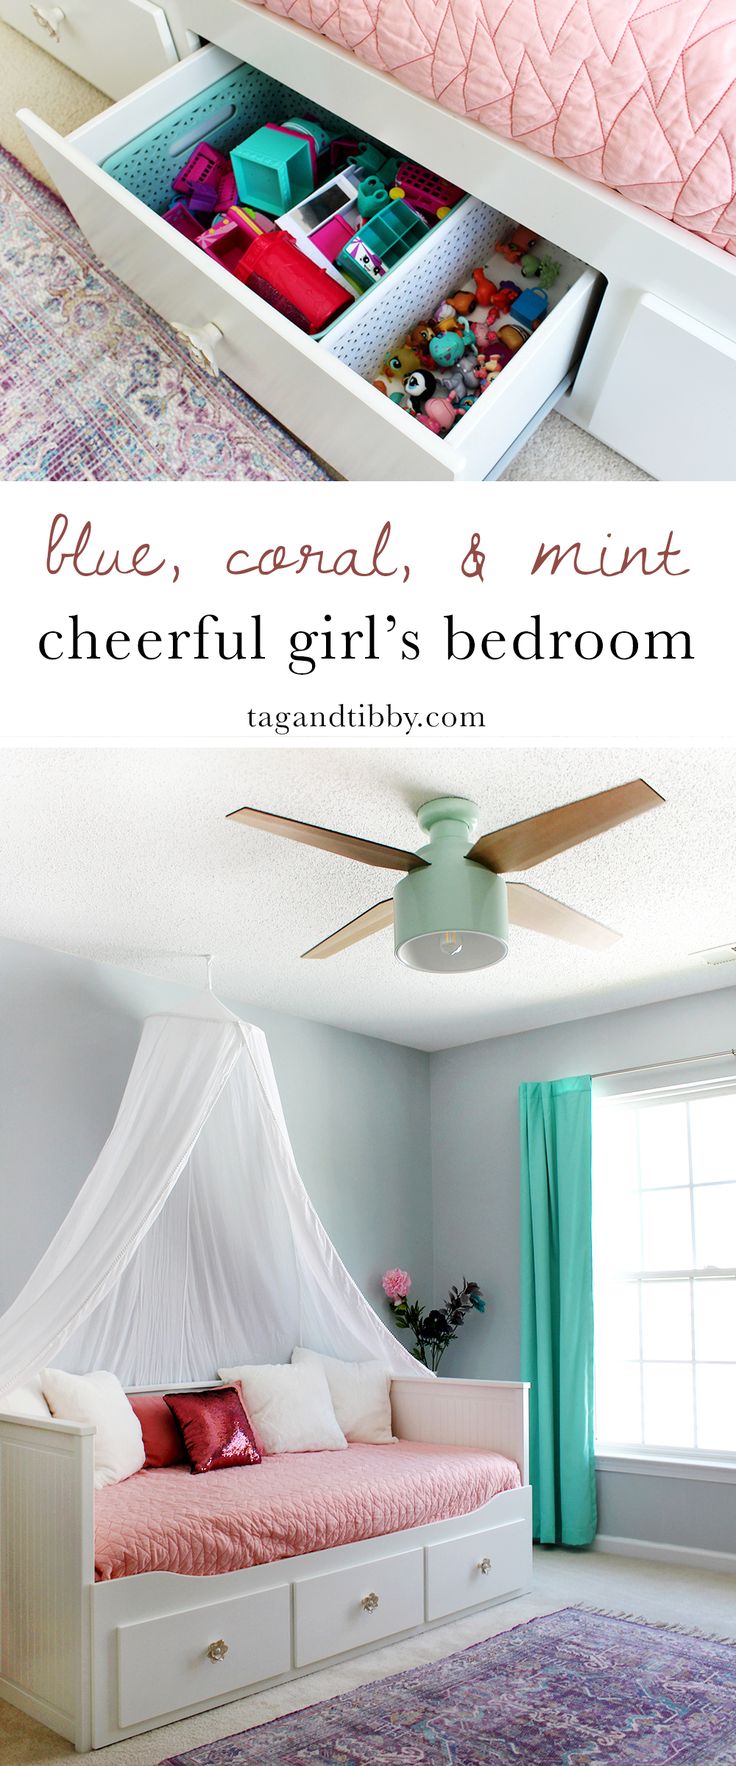 cheerful girl's bedroom in SW Misty blue paint & Cranbrook ceiling fan #kidsbedr...